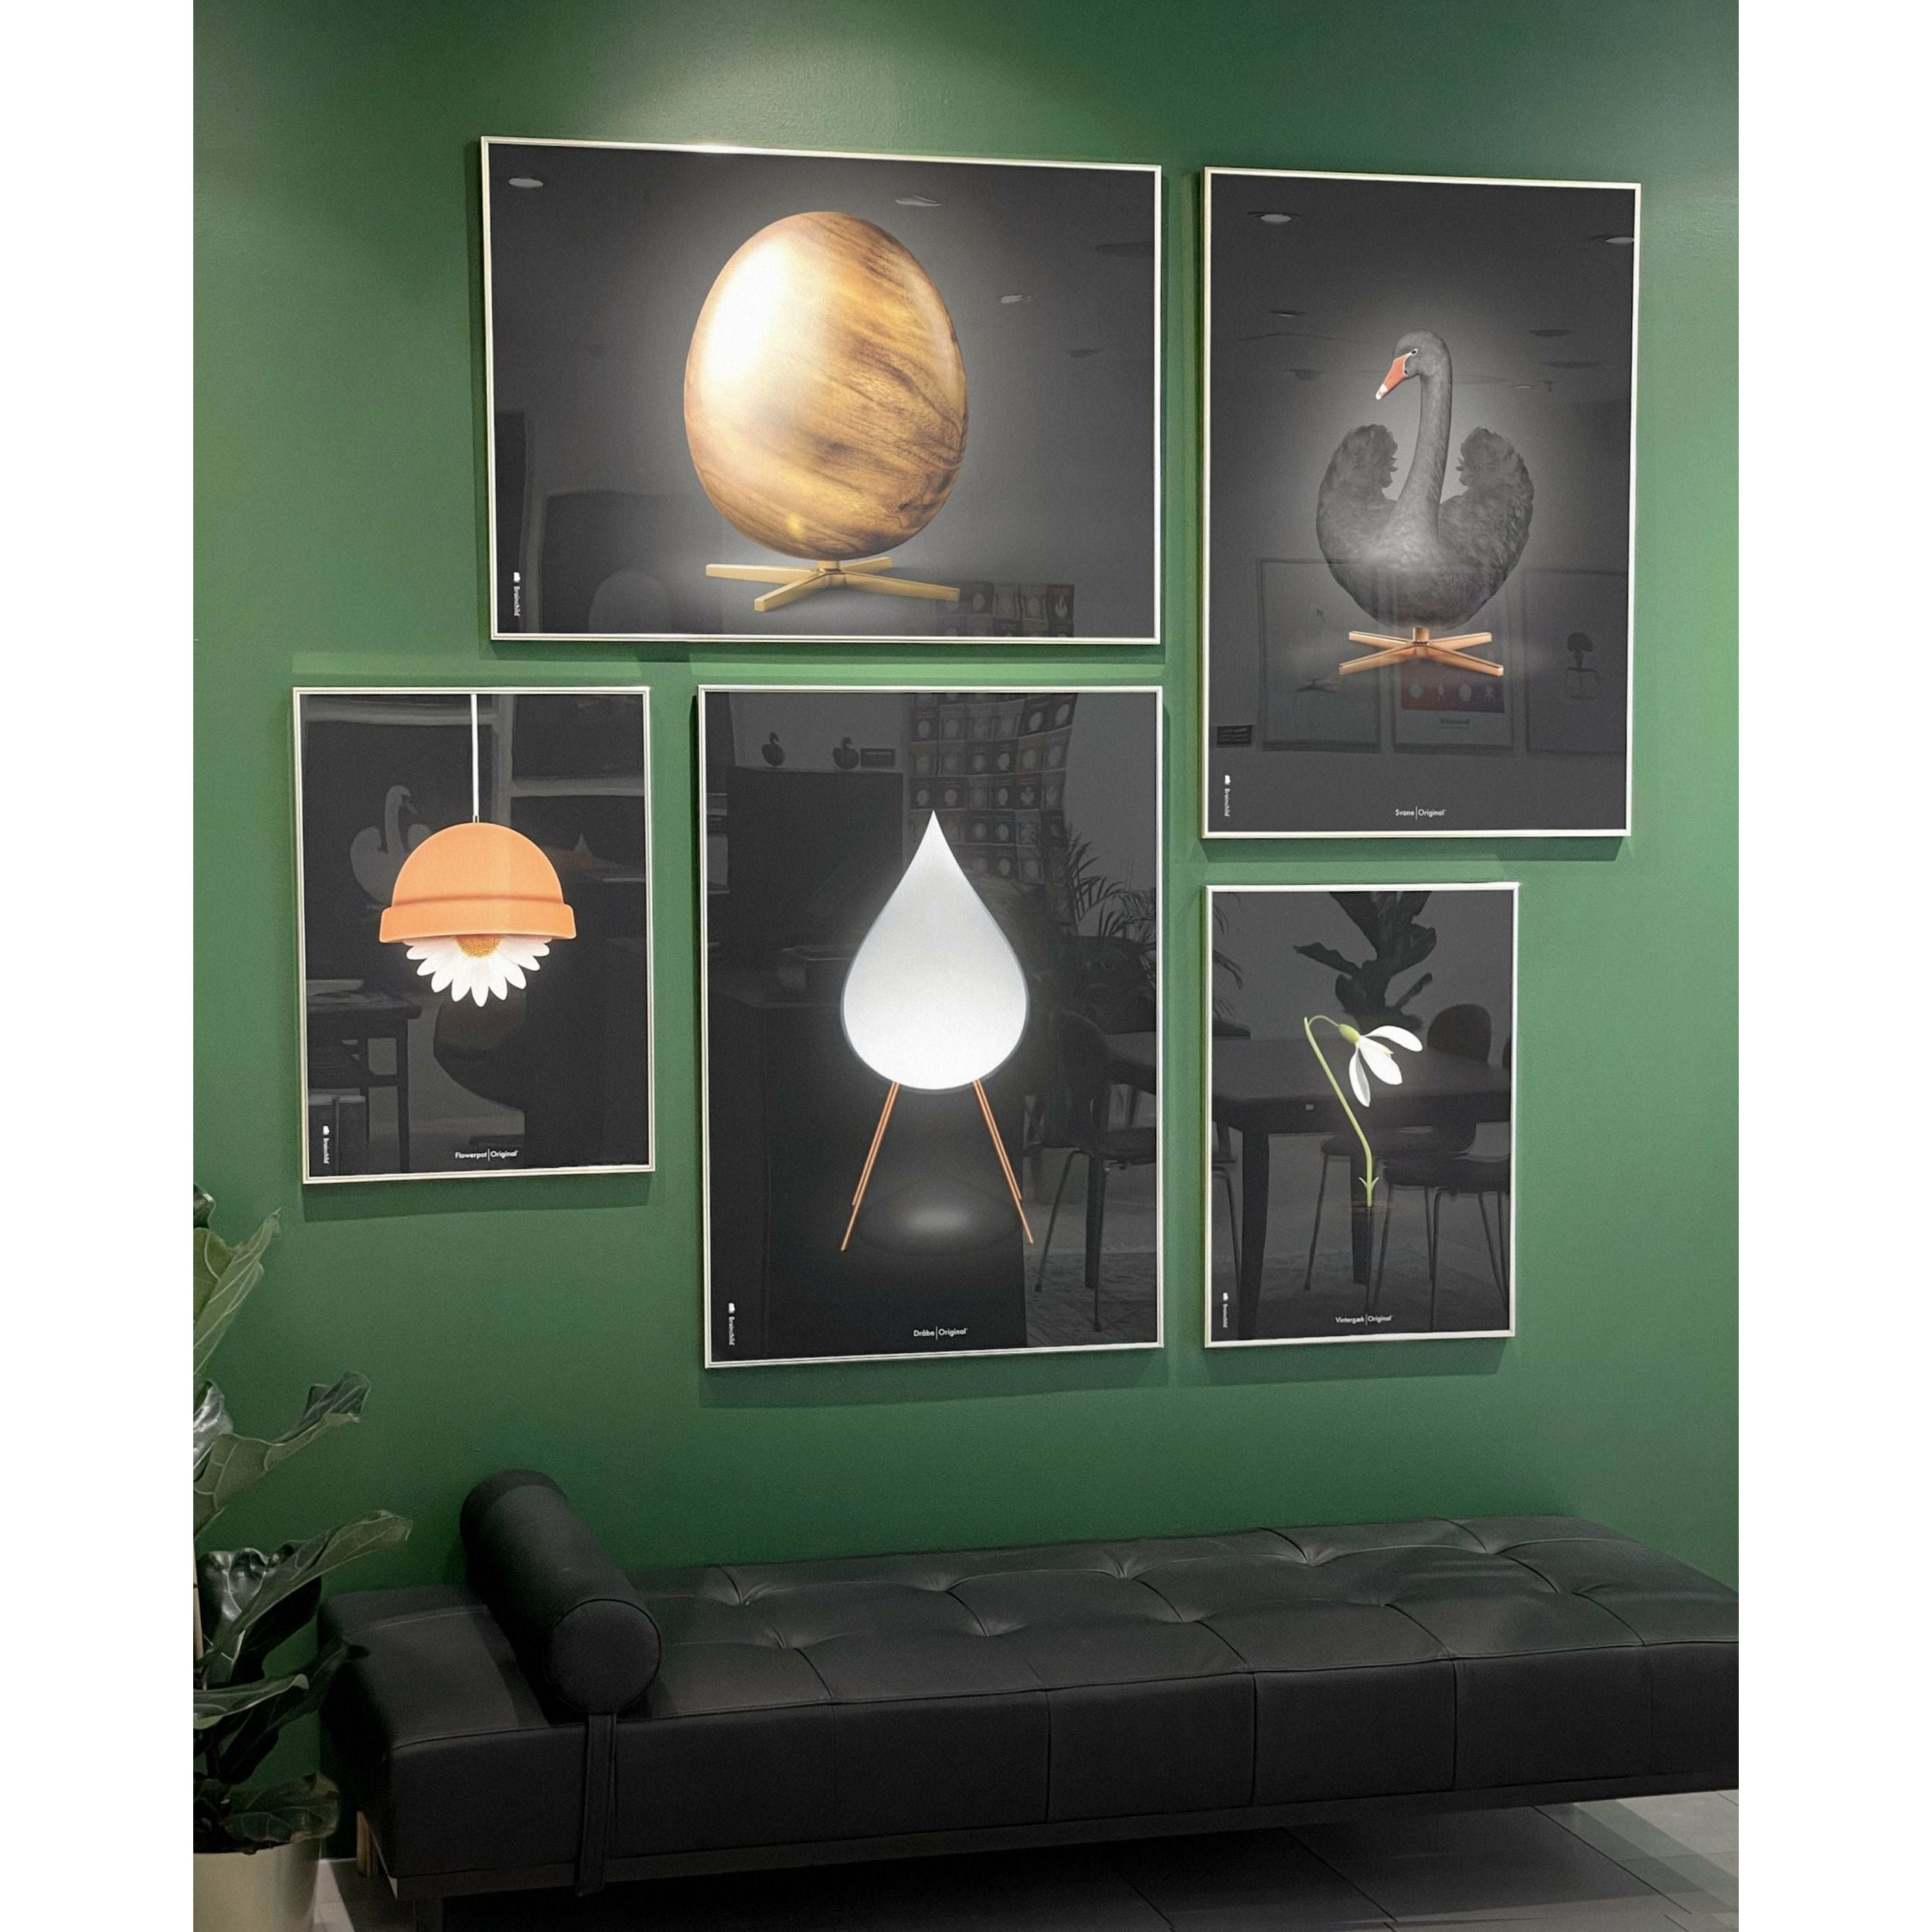 Brainchild Egg Cross Format Poster, Frame Made Of Dark Wood 70x100 Cm, Black